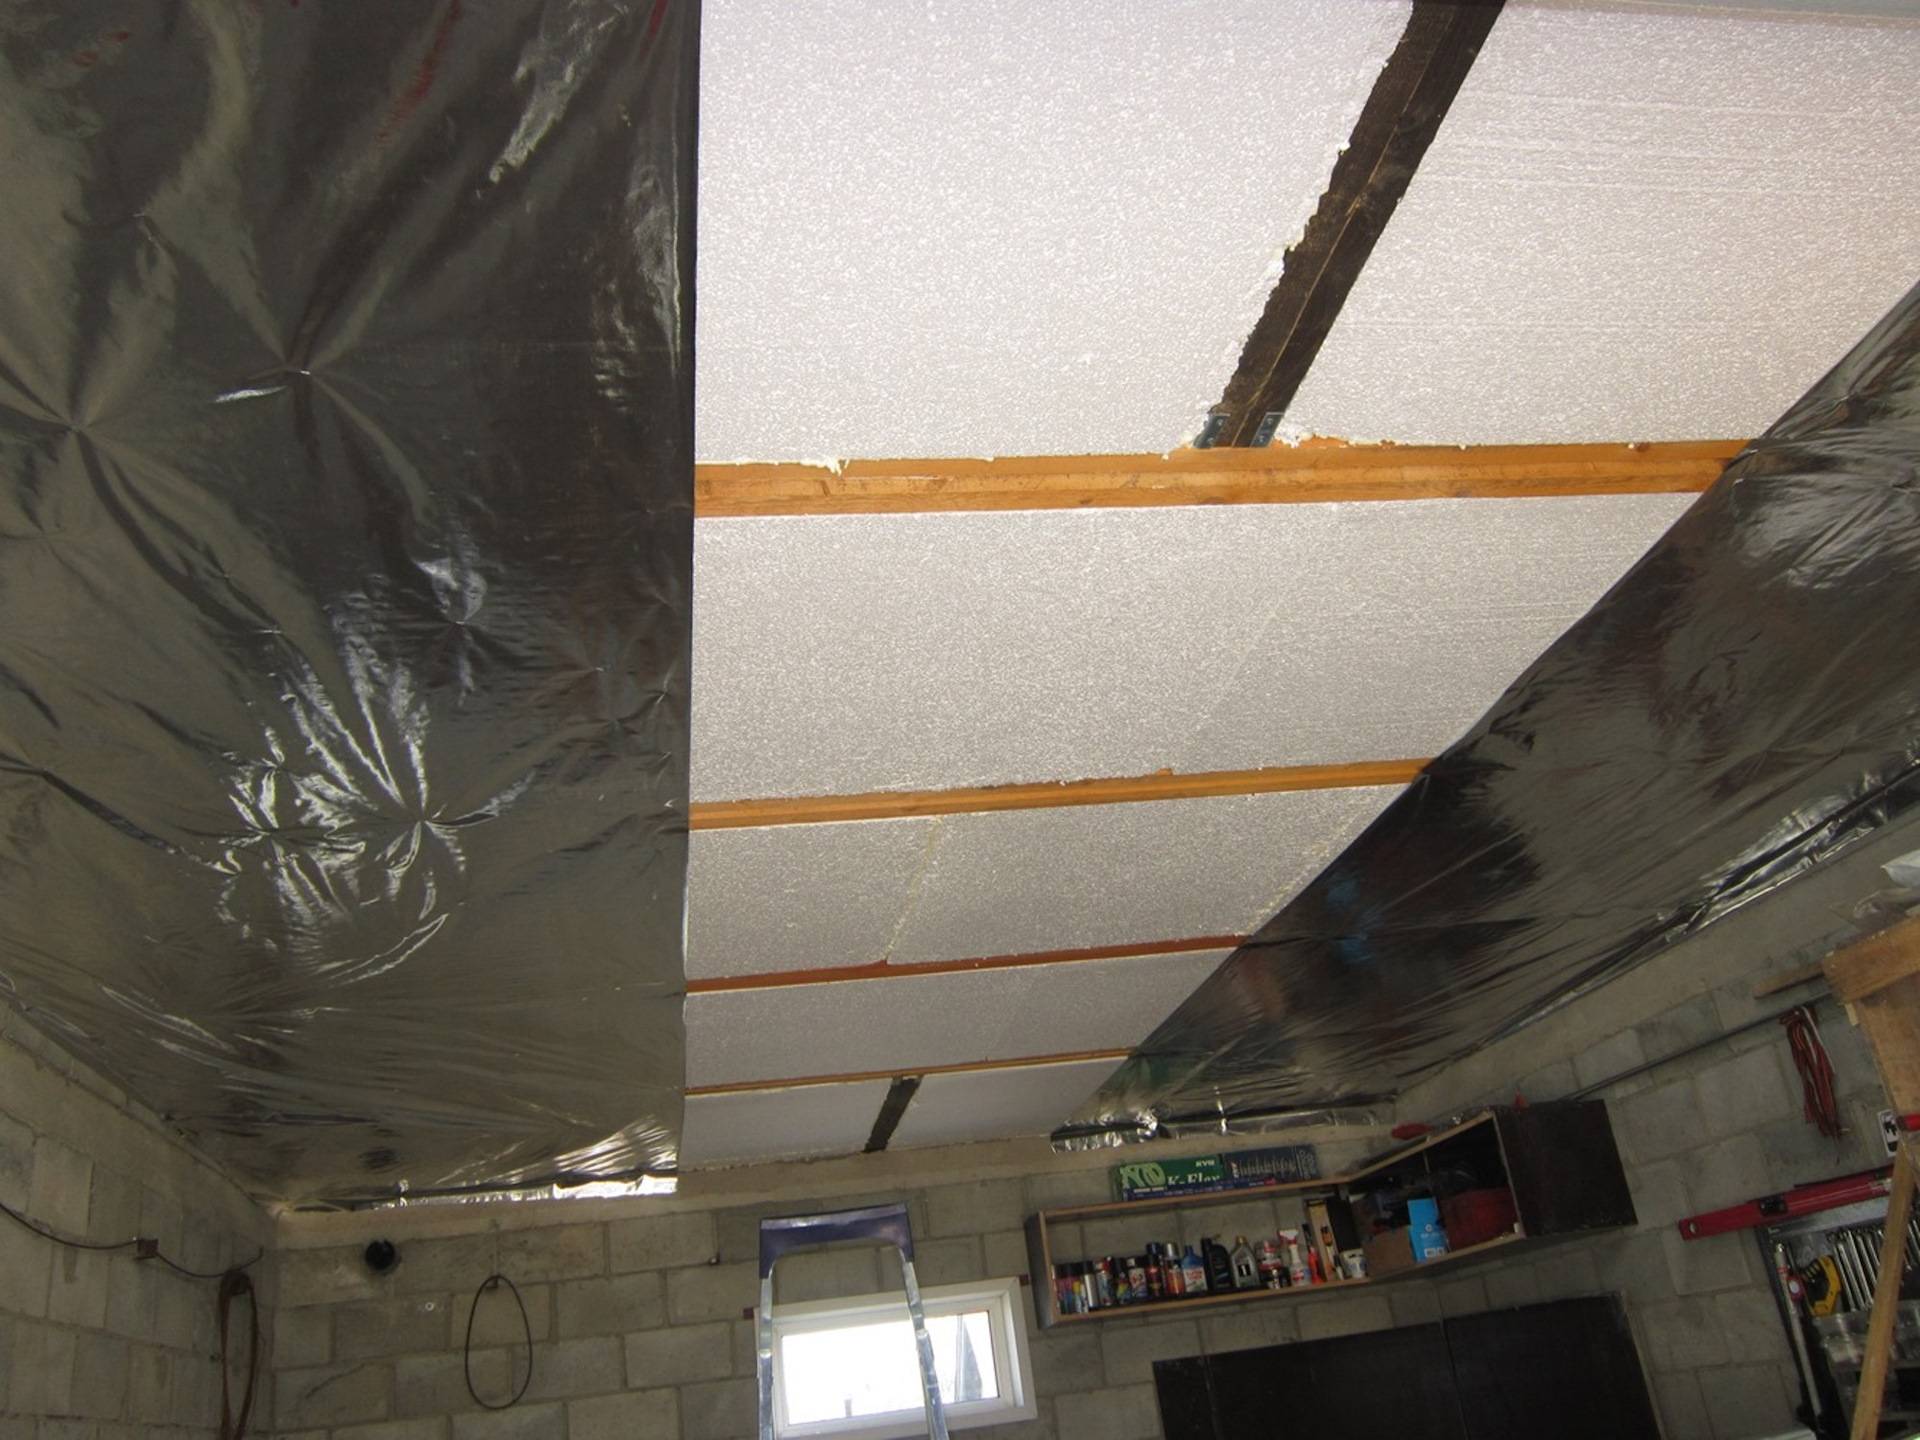 Утепление потолка в подвале дома частного изнутри пеноплексом и гаража, видео